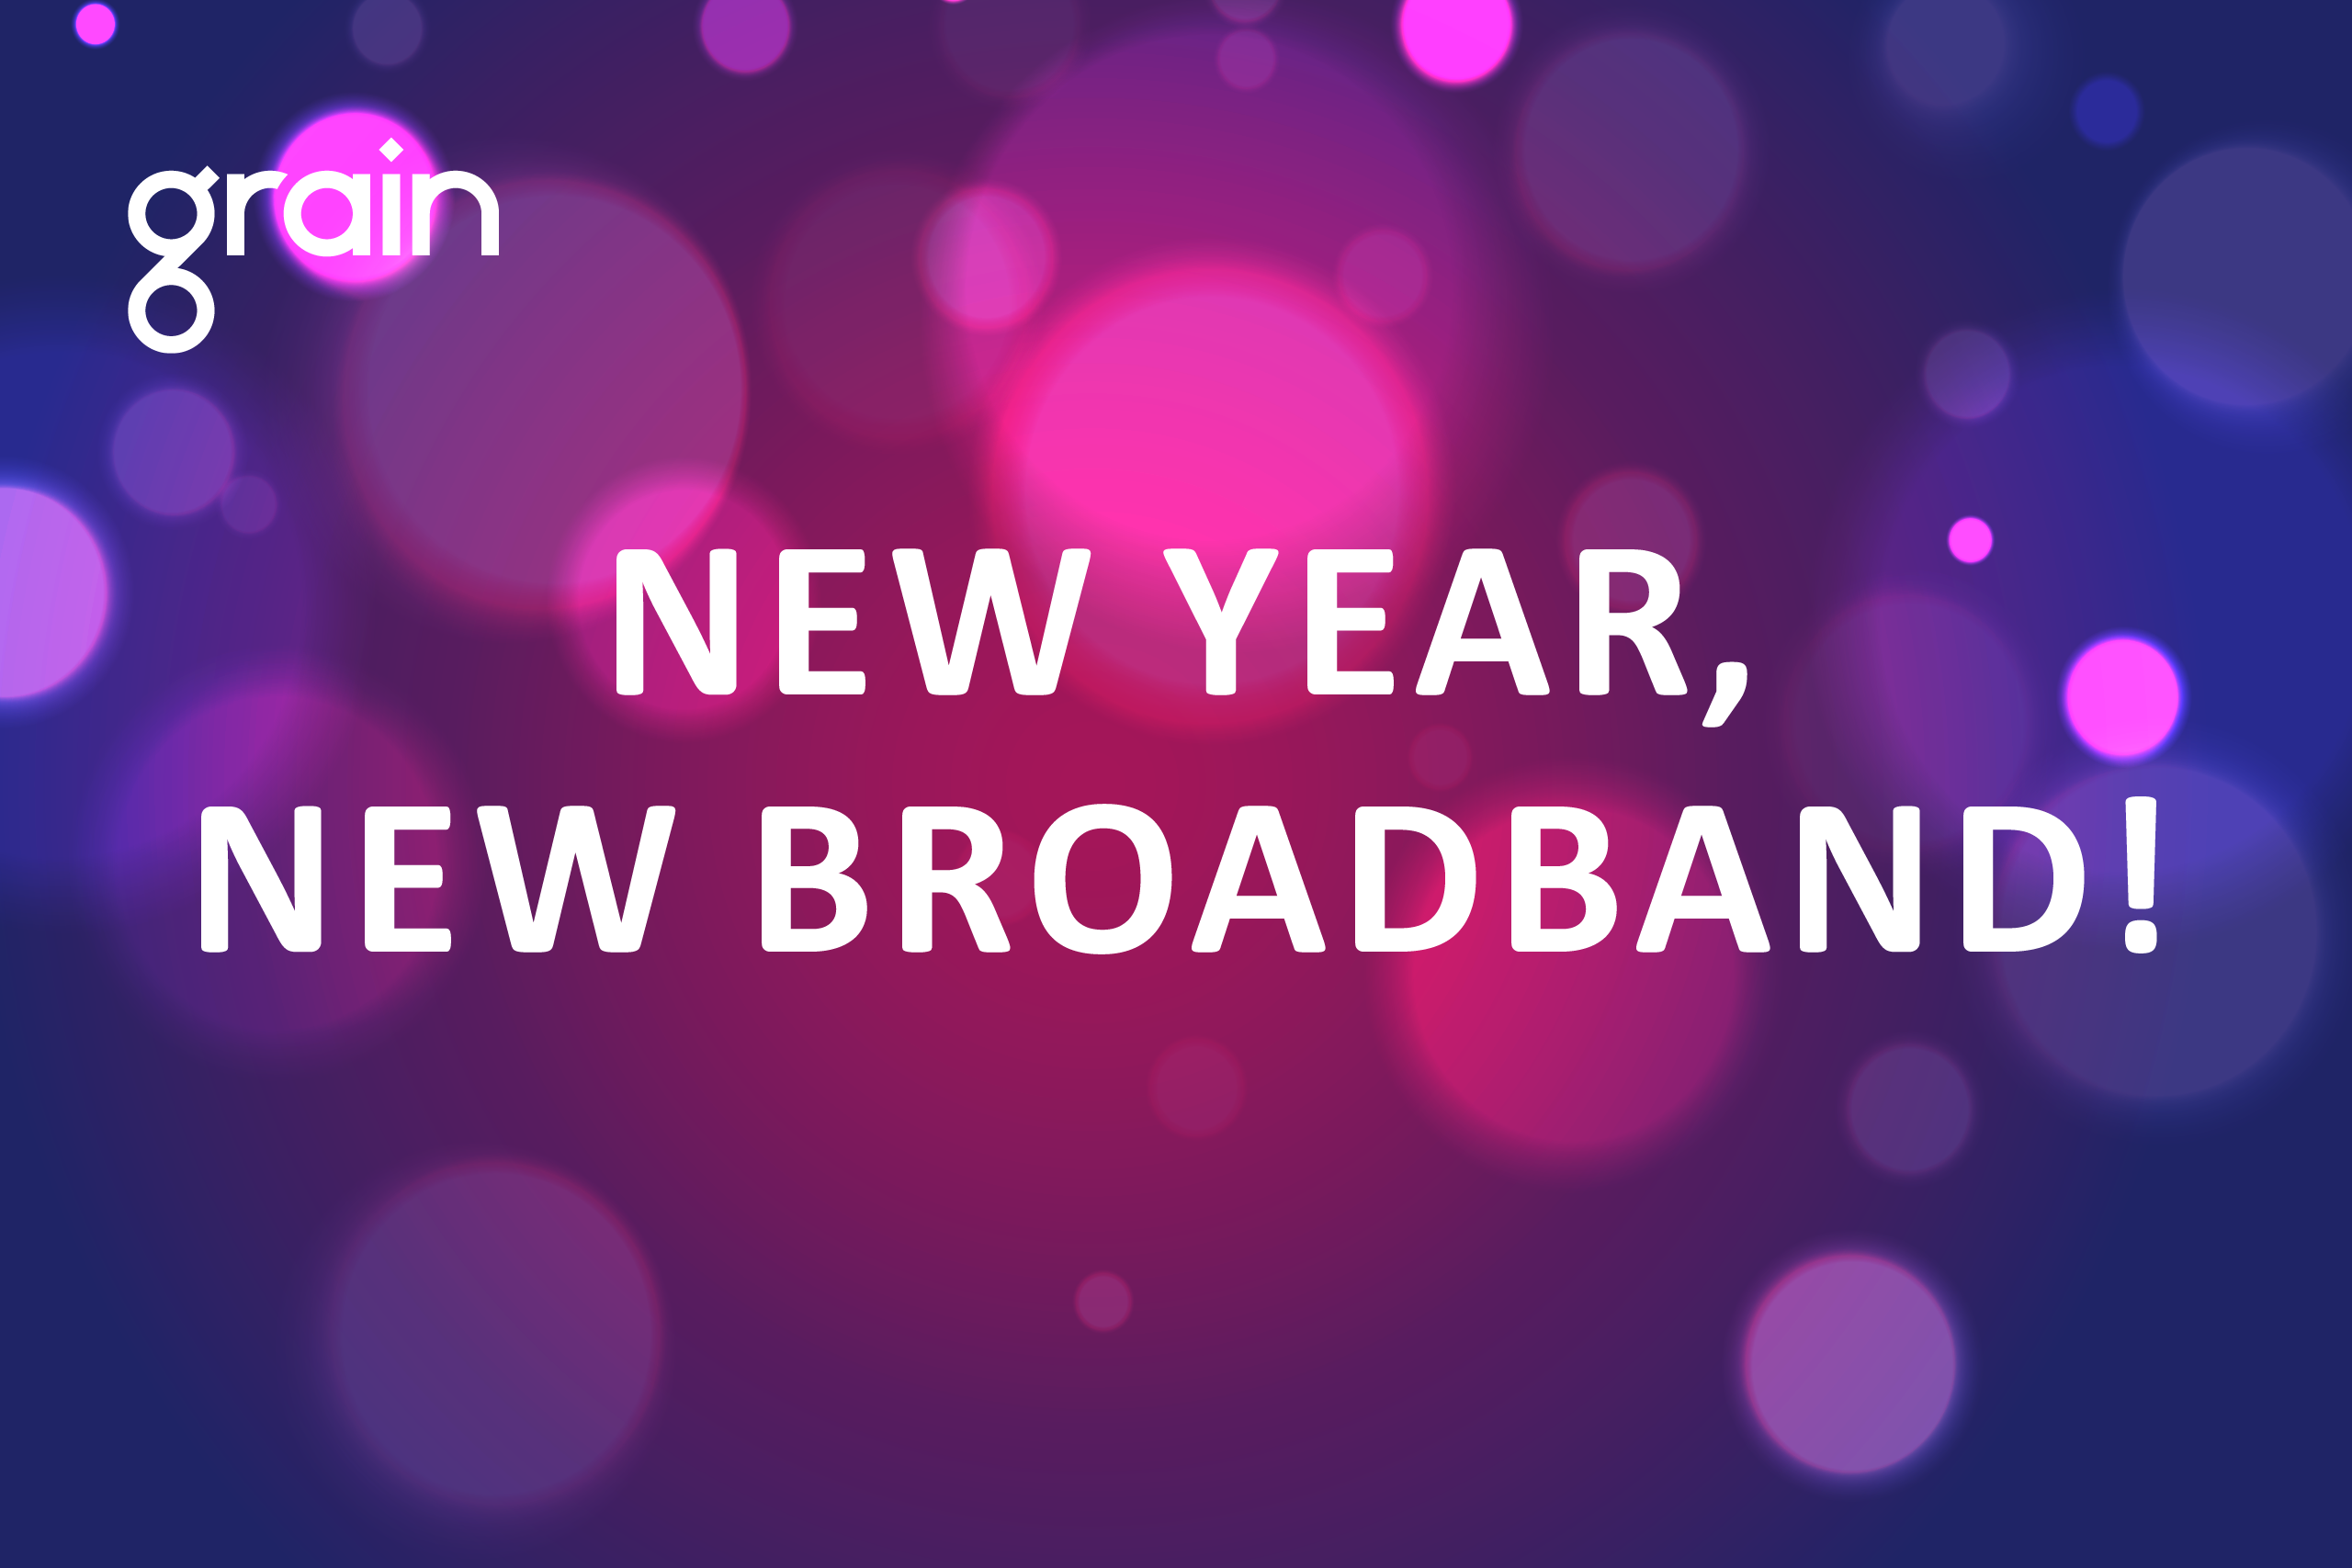 New broadband